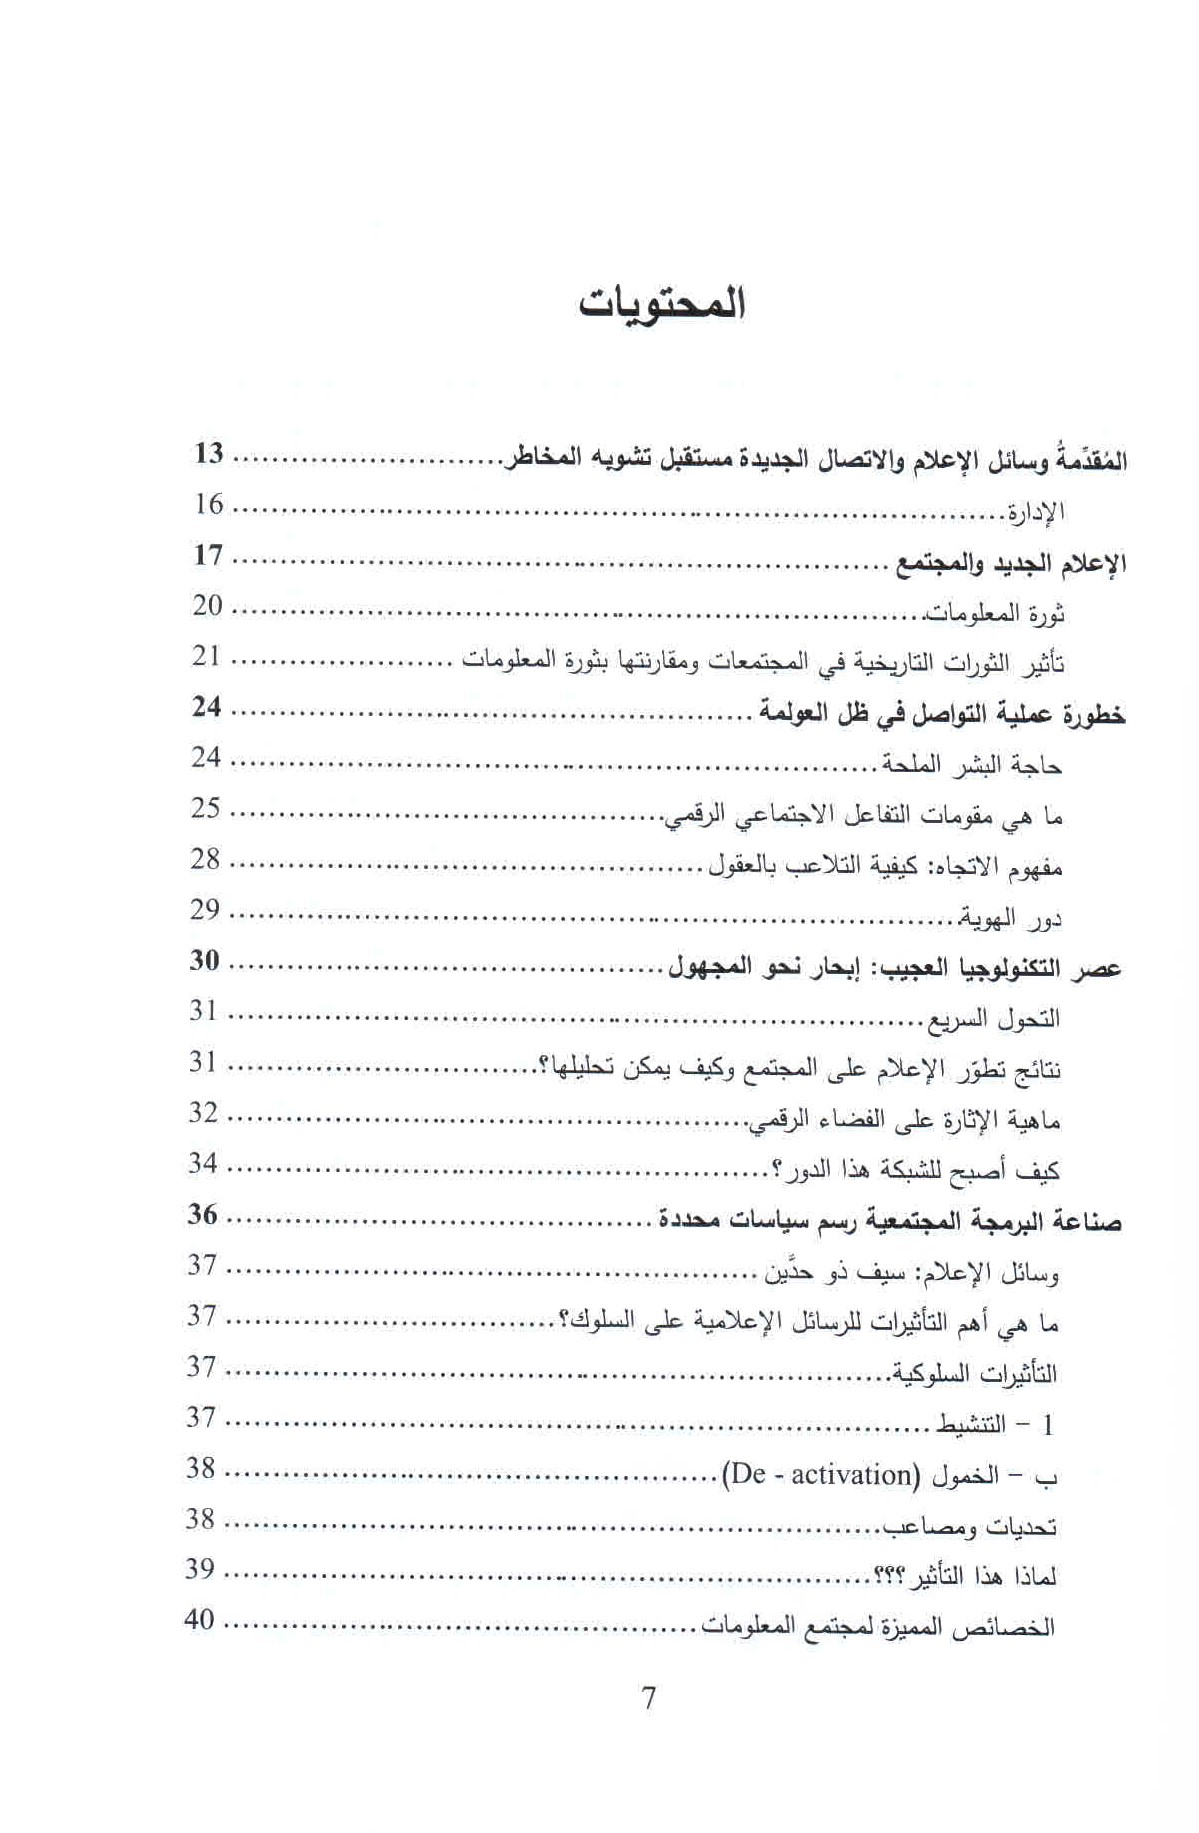 قائمة محتويات كتاب الإدمان الرقمي ص. 7